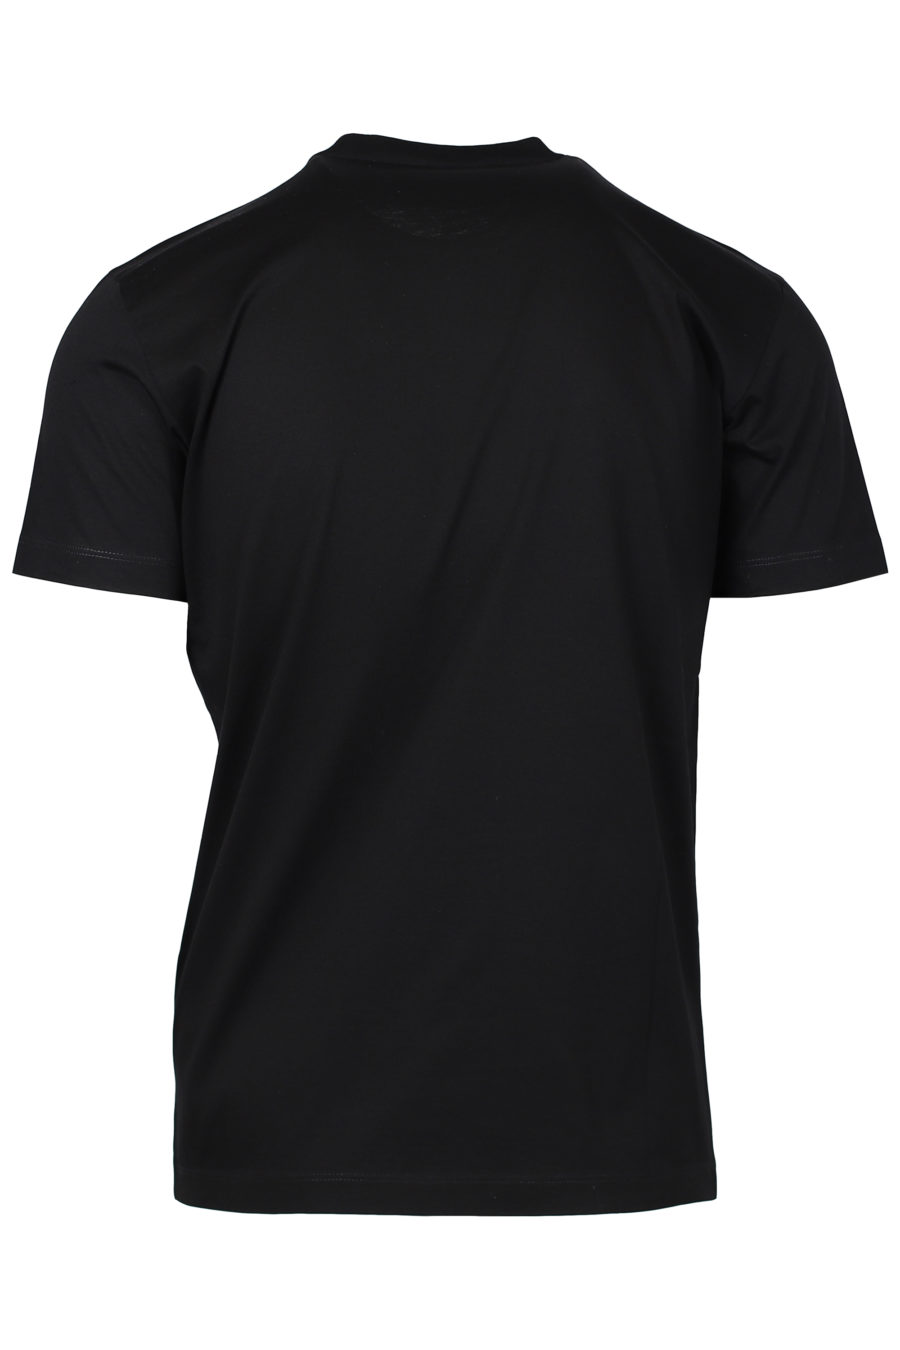 Camiseta negra con logo "Icon Spray" - IMG 2230